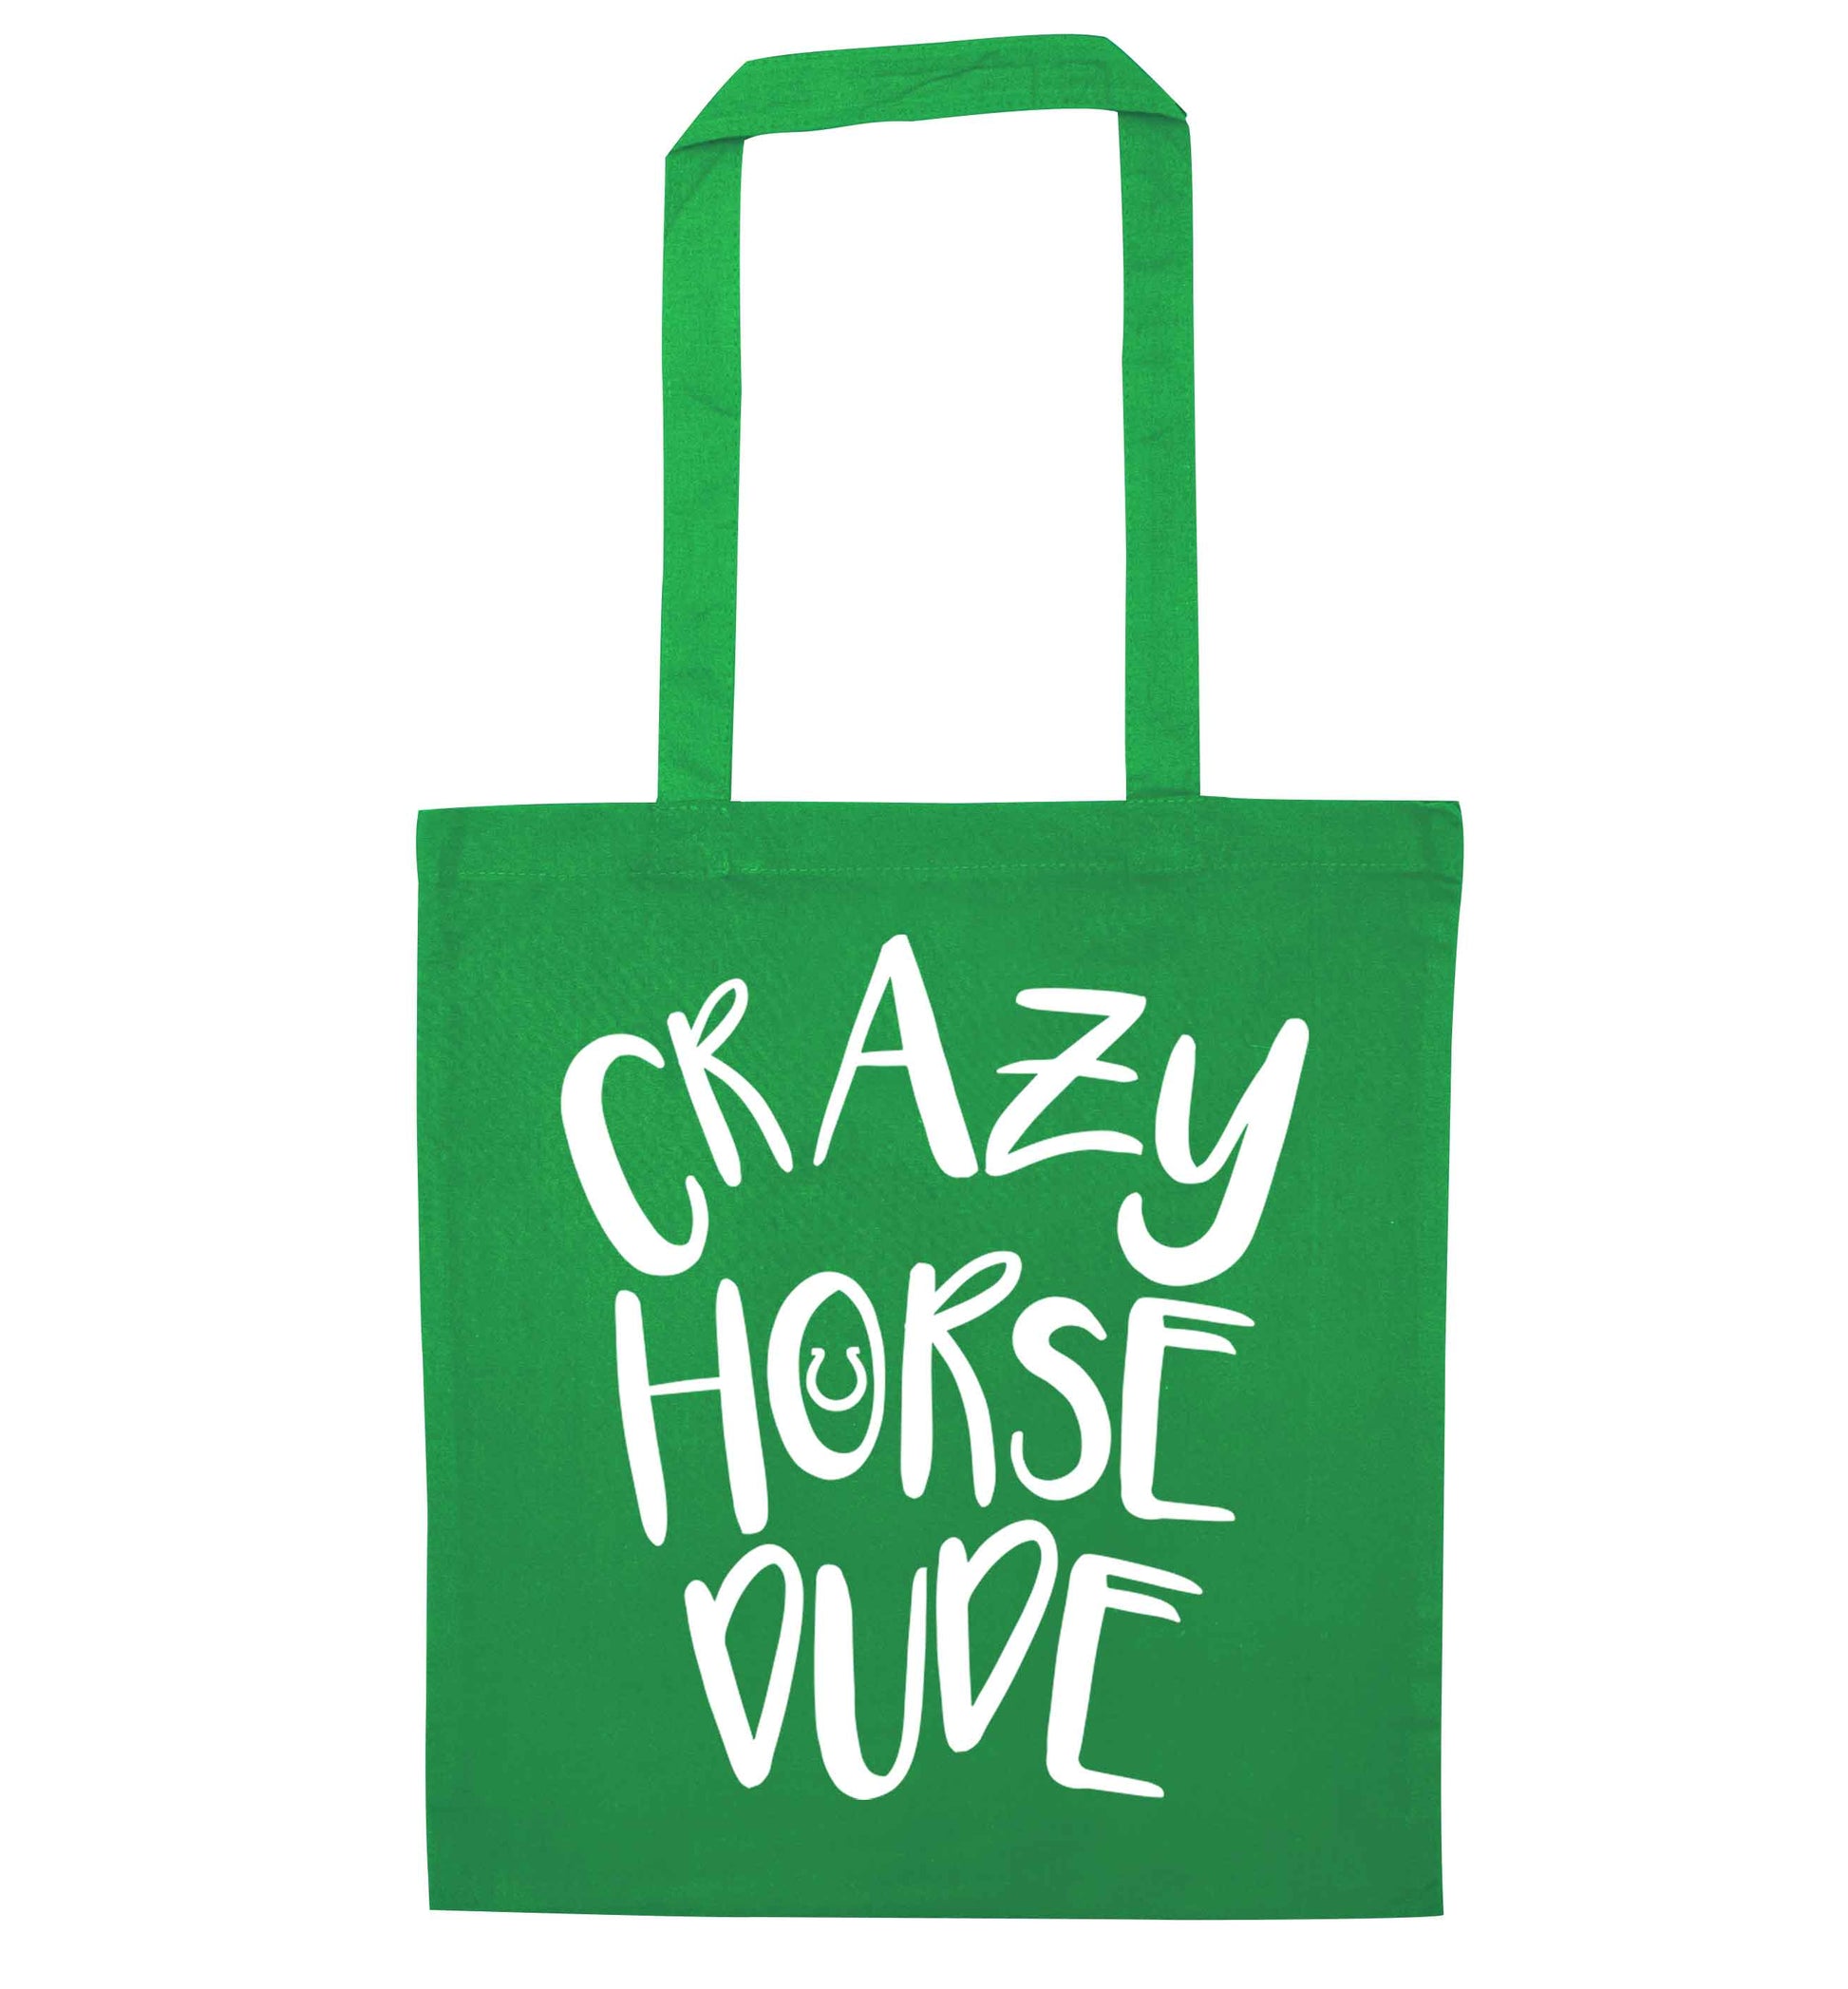 Crazy horse dude green tote bag